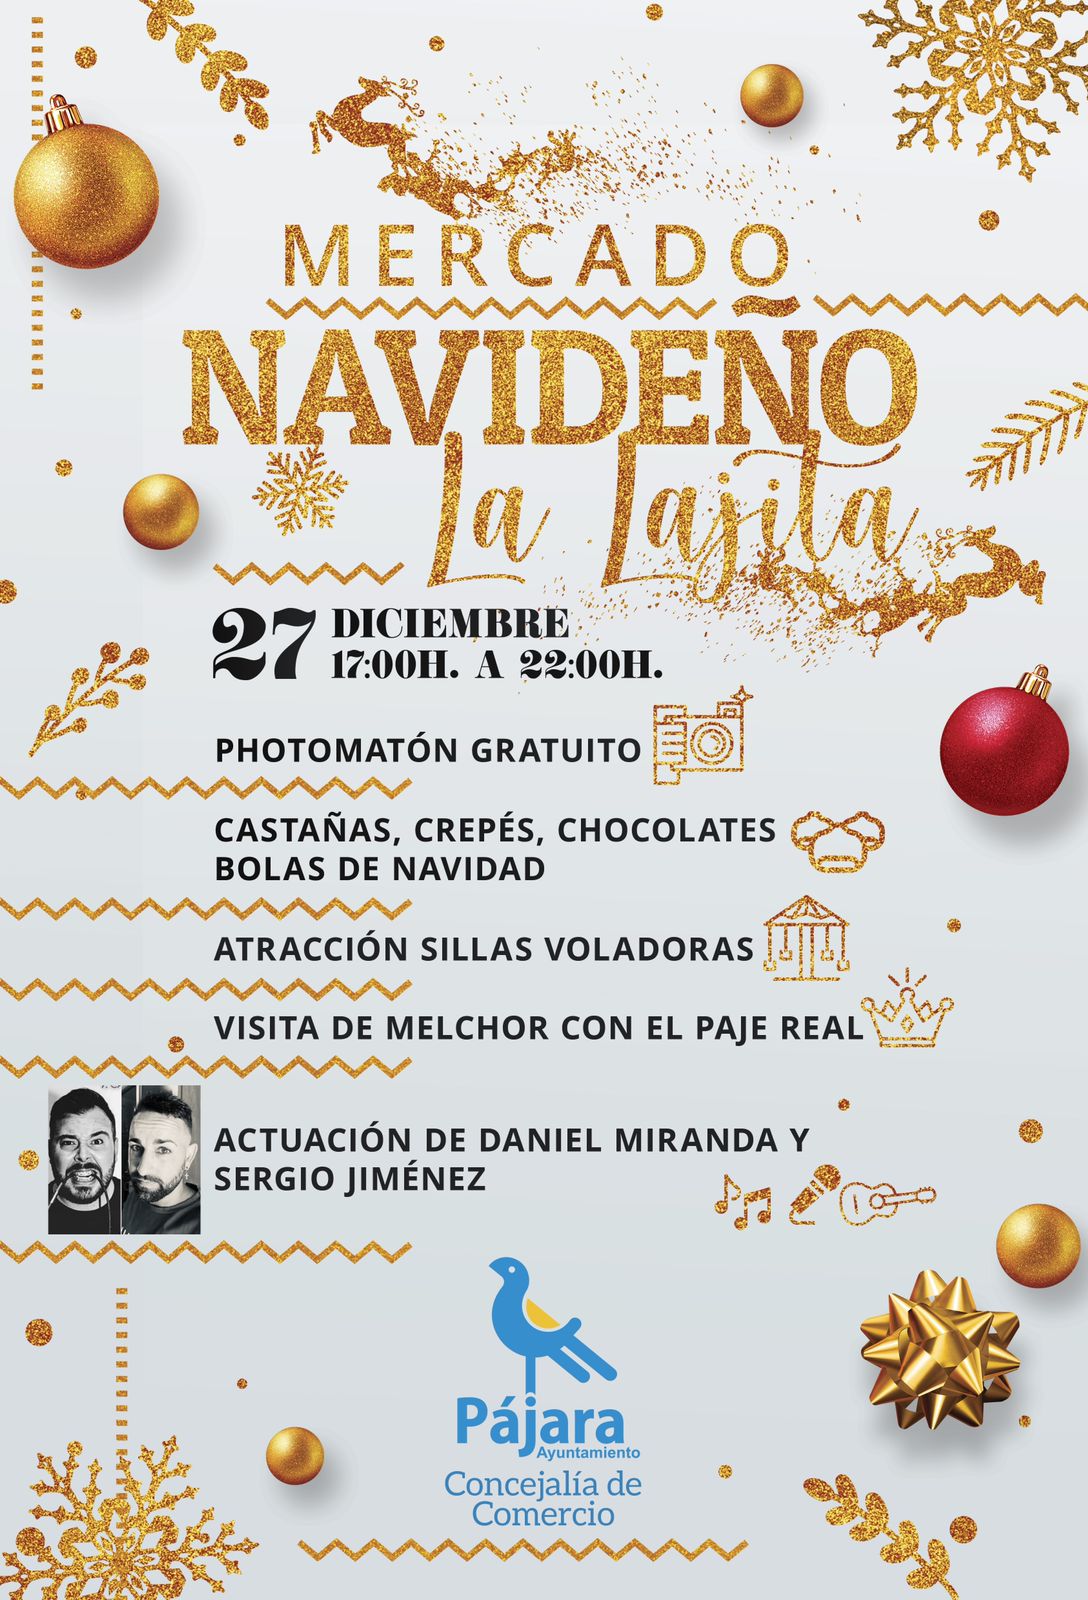 El Ayuntamiento promueve el comercio local con mercados navideños en Costa Calma, La Lajita, Pájara y Morro Jable